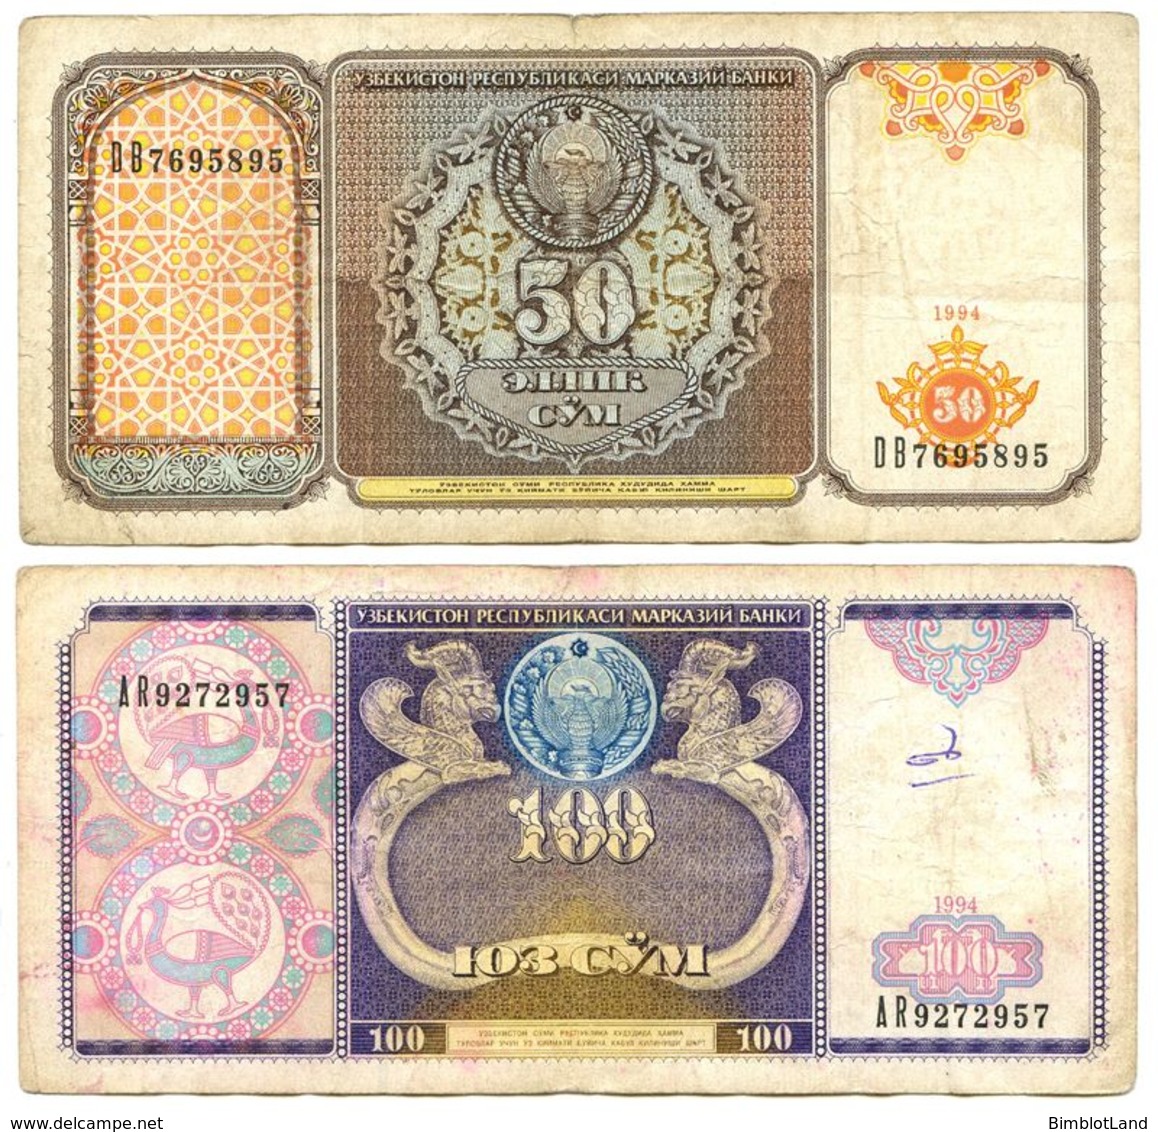 2 Billet Uzbekistan 100 Et 50 Cym 1994 Ouzbekistan - Usbekistan